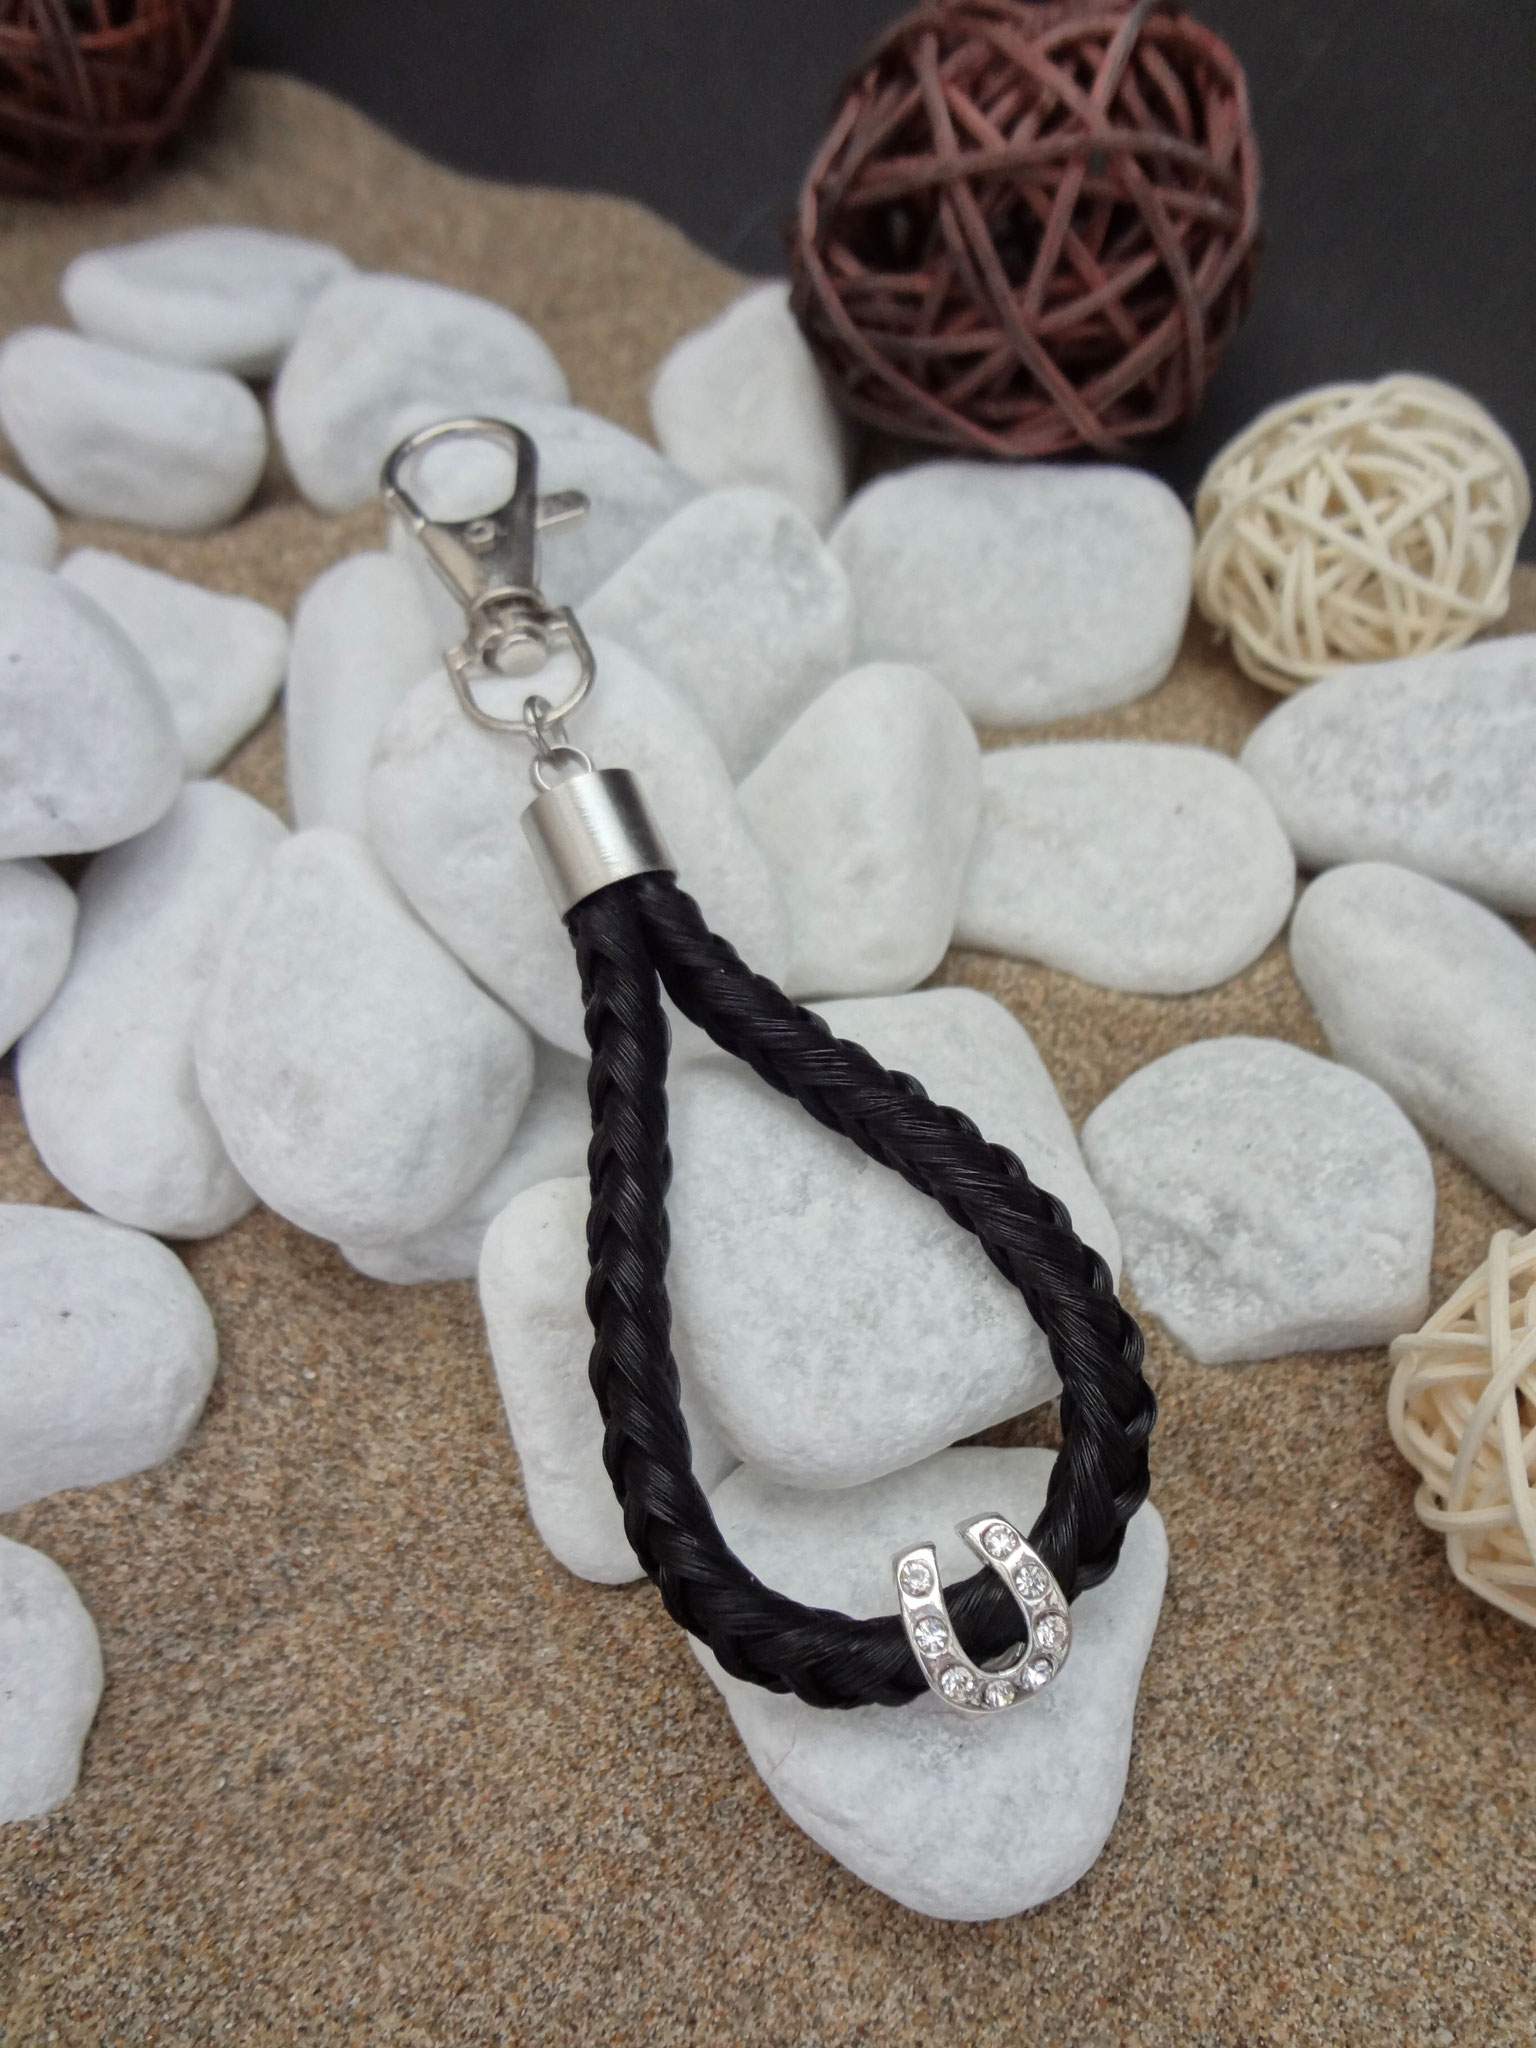 Schlüsselanhänger "Tropfen": Aus schwarzen Strängen geflochten, mit versilberter Perle "Hufeisen" mit Strasssteinen und Endkappe aus Edelstahl - Preis: 35 Euro